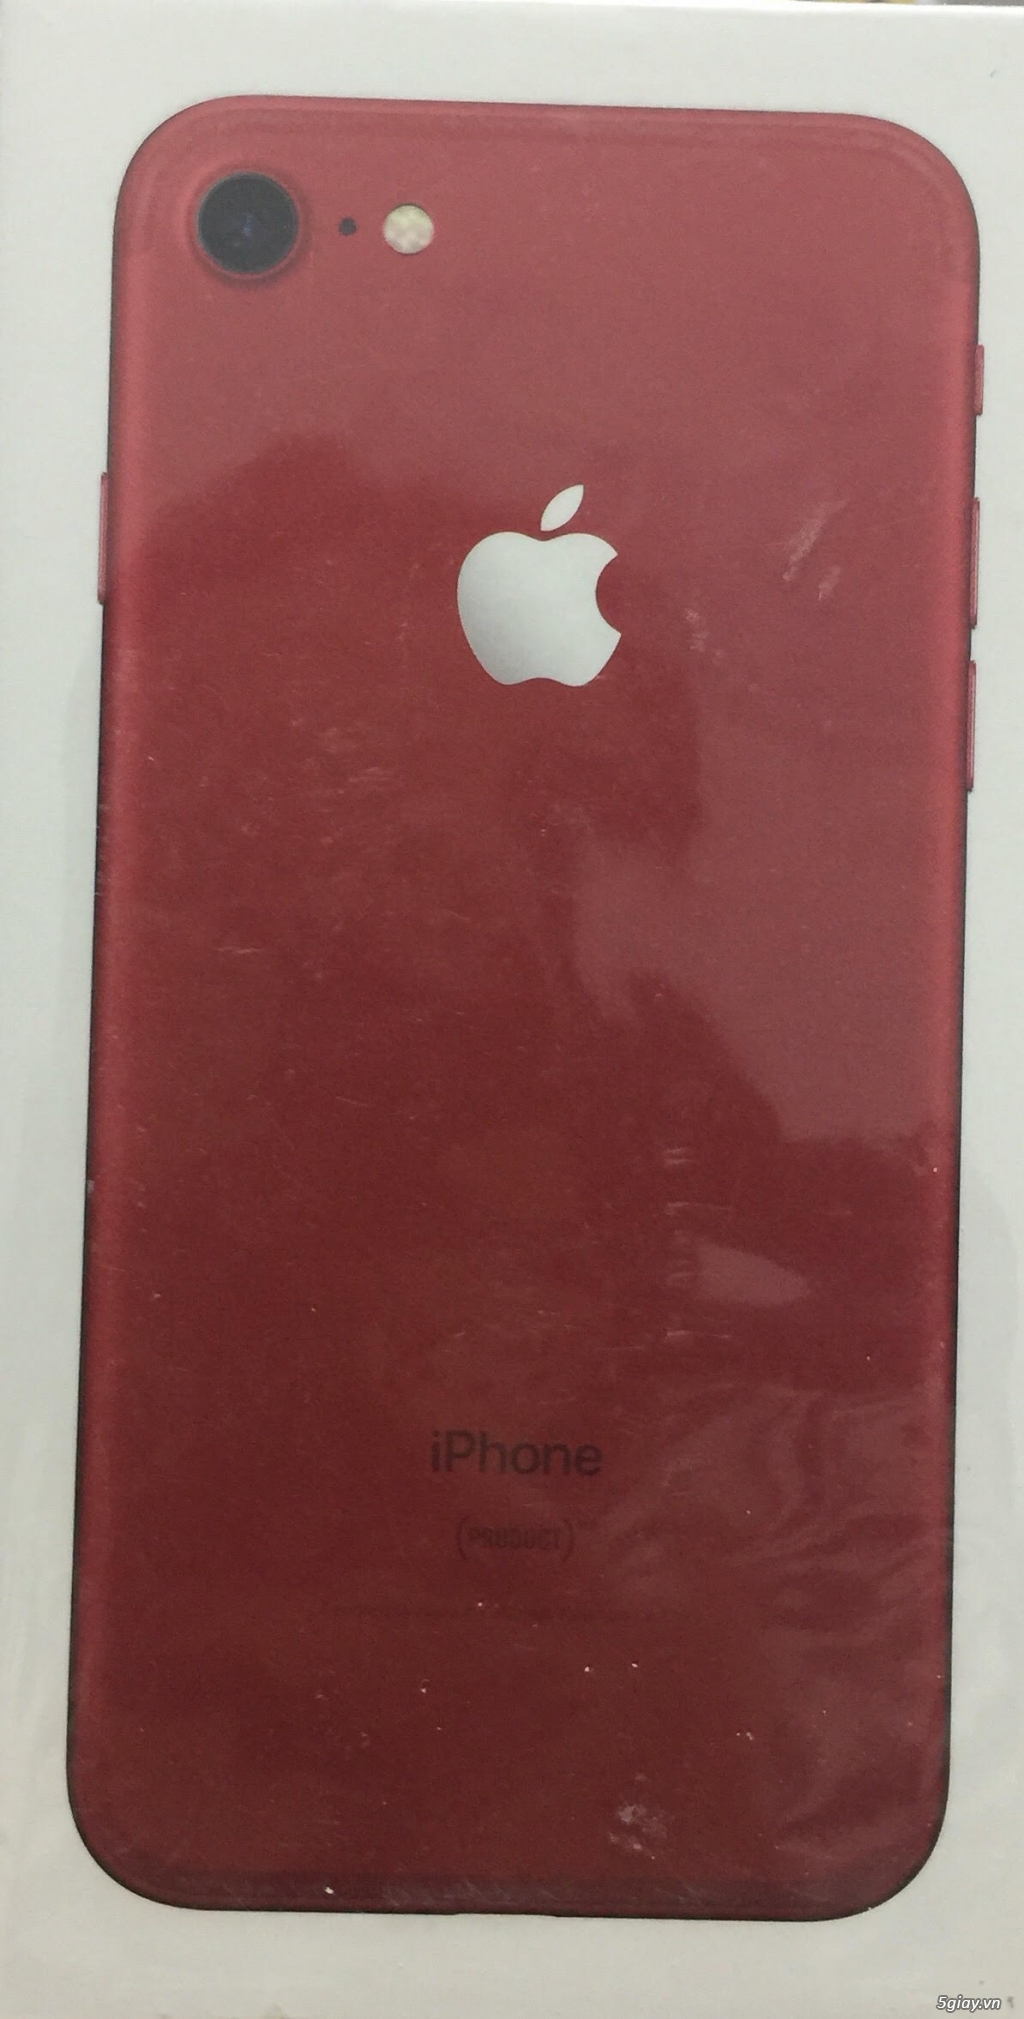 Bán iphone 7 Red, 128GB, full box, chưa active giá 17.000.000đ - 1